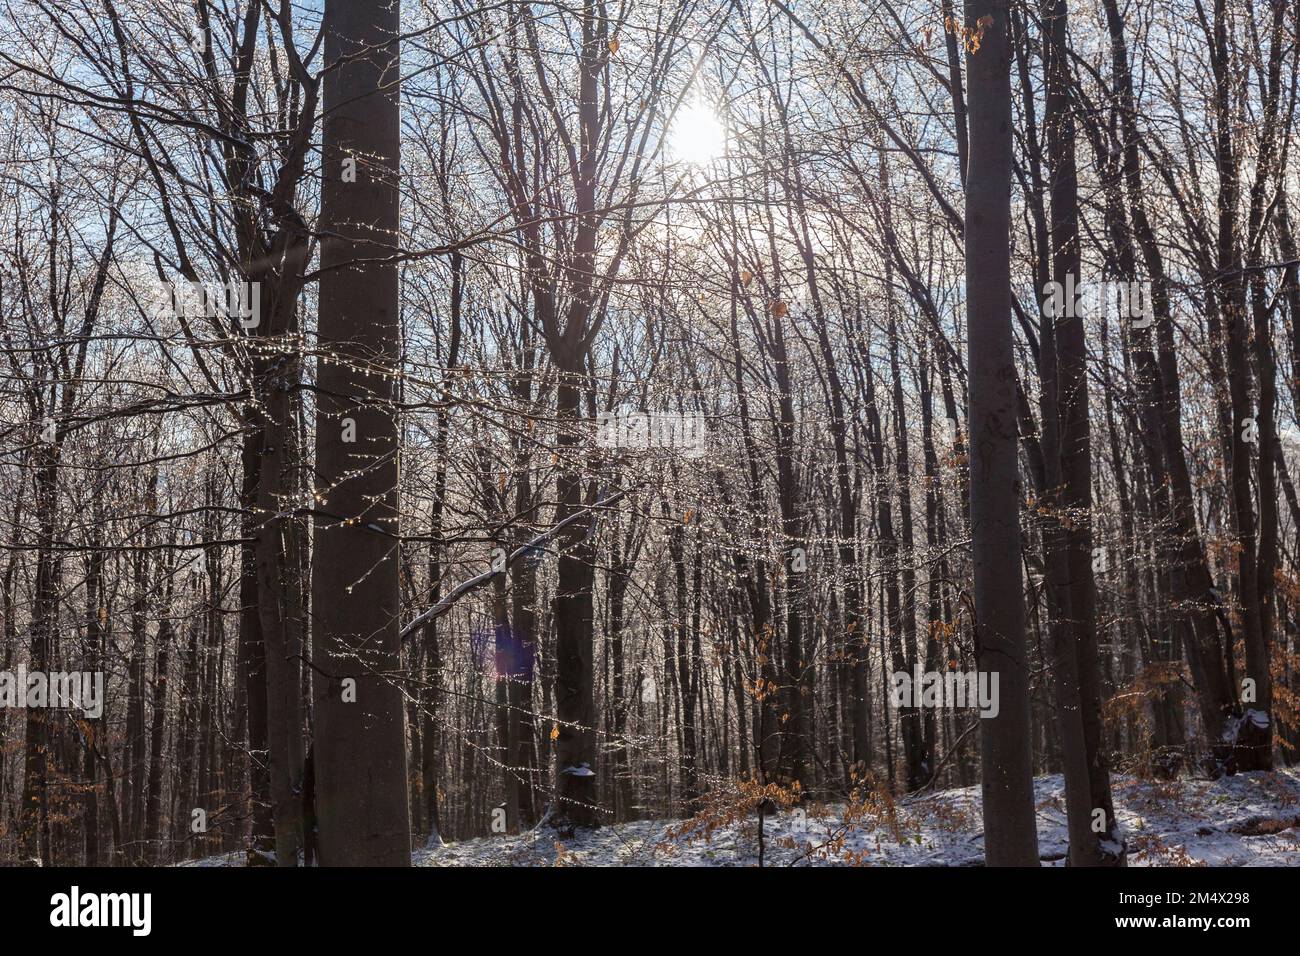 Forêt de hêtres en hiver avec la fonte de beaux rayons de soleil de lumière à travers les arbres. Le soleil brille à travers les arbres et projette une lumière dorée sur la neige. Un vin unique Banque D'Images